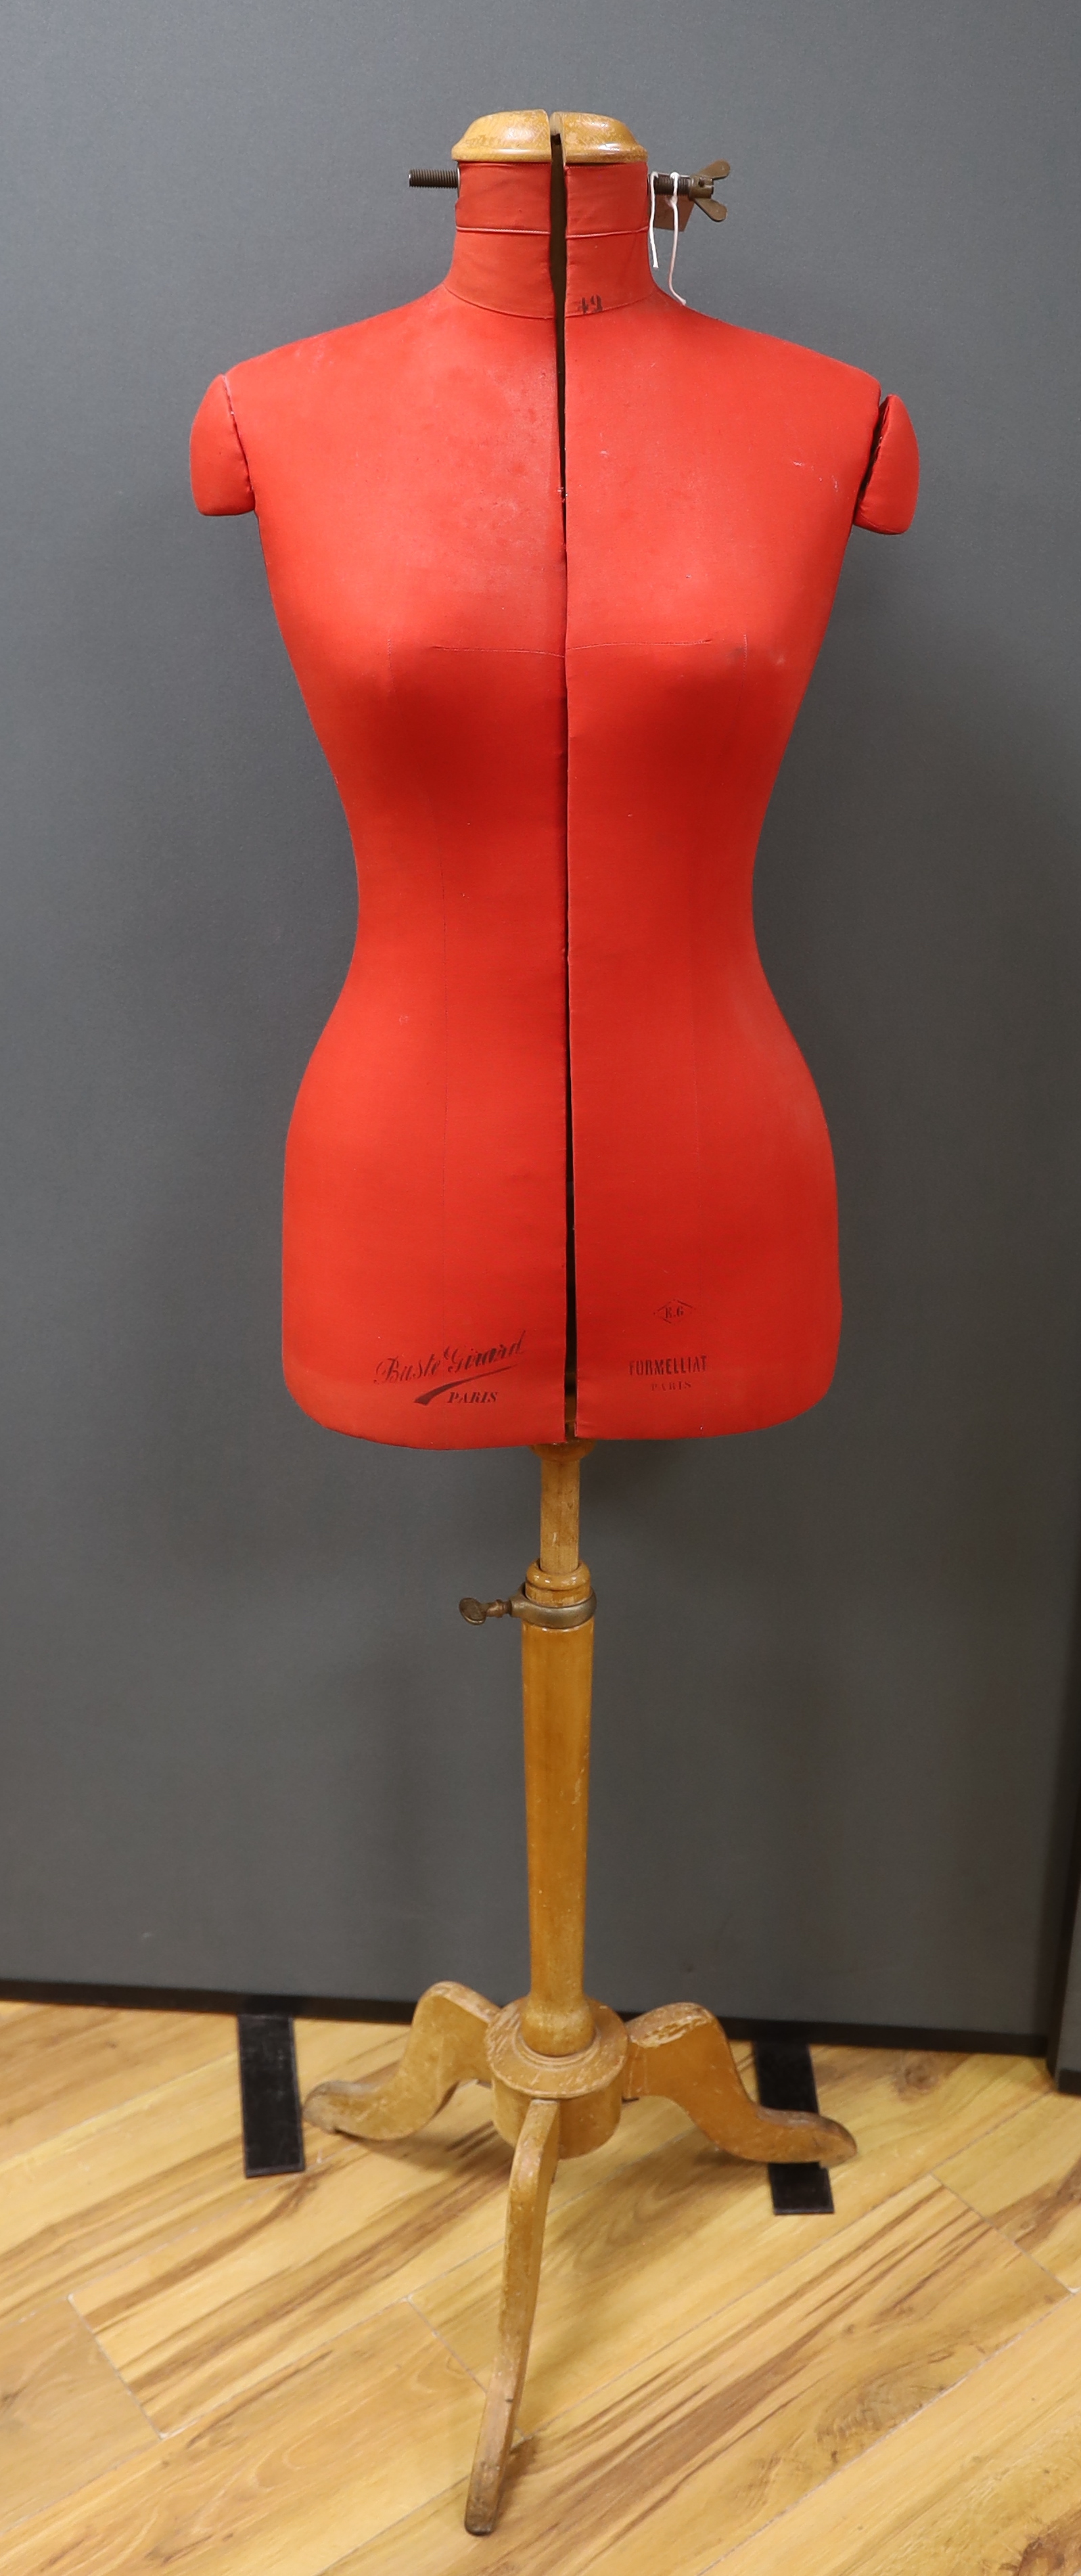 A Buste ‘Giuard, Formelliat Paris tailor's dummy, 153cm high